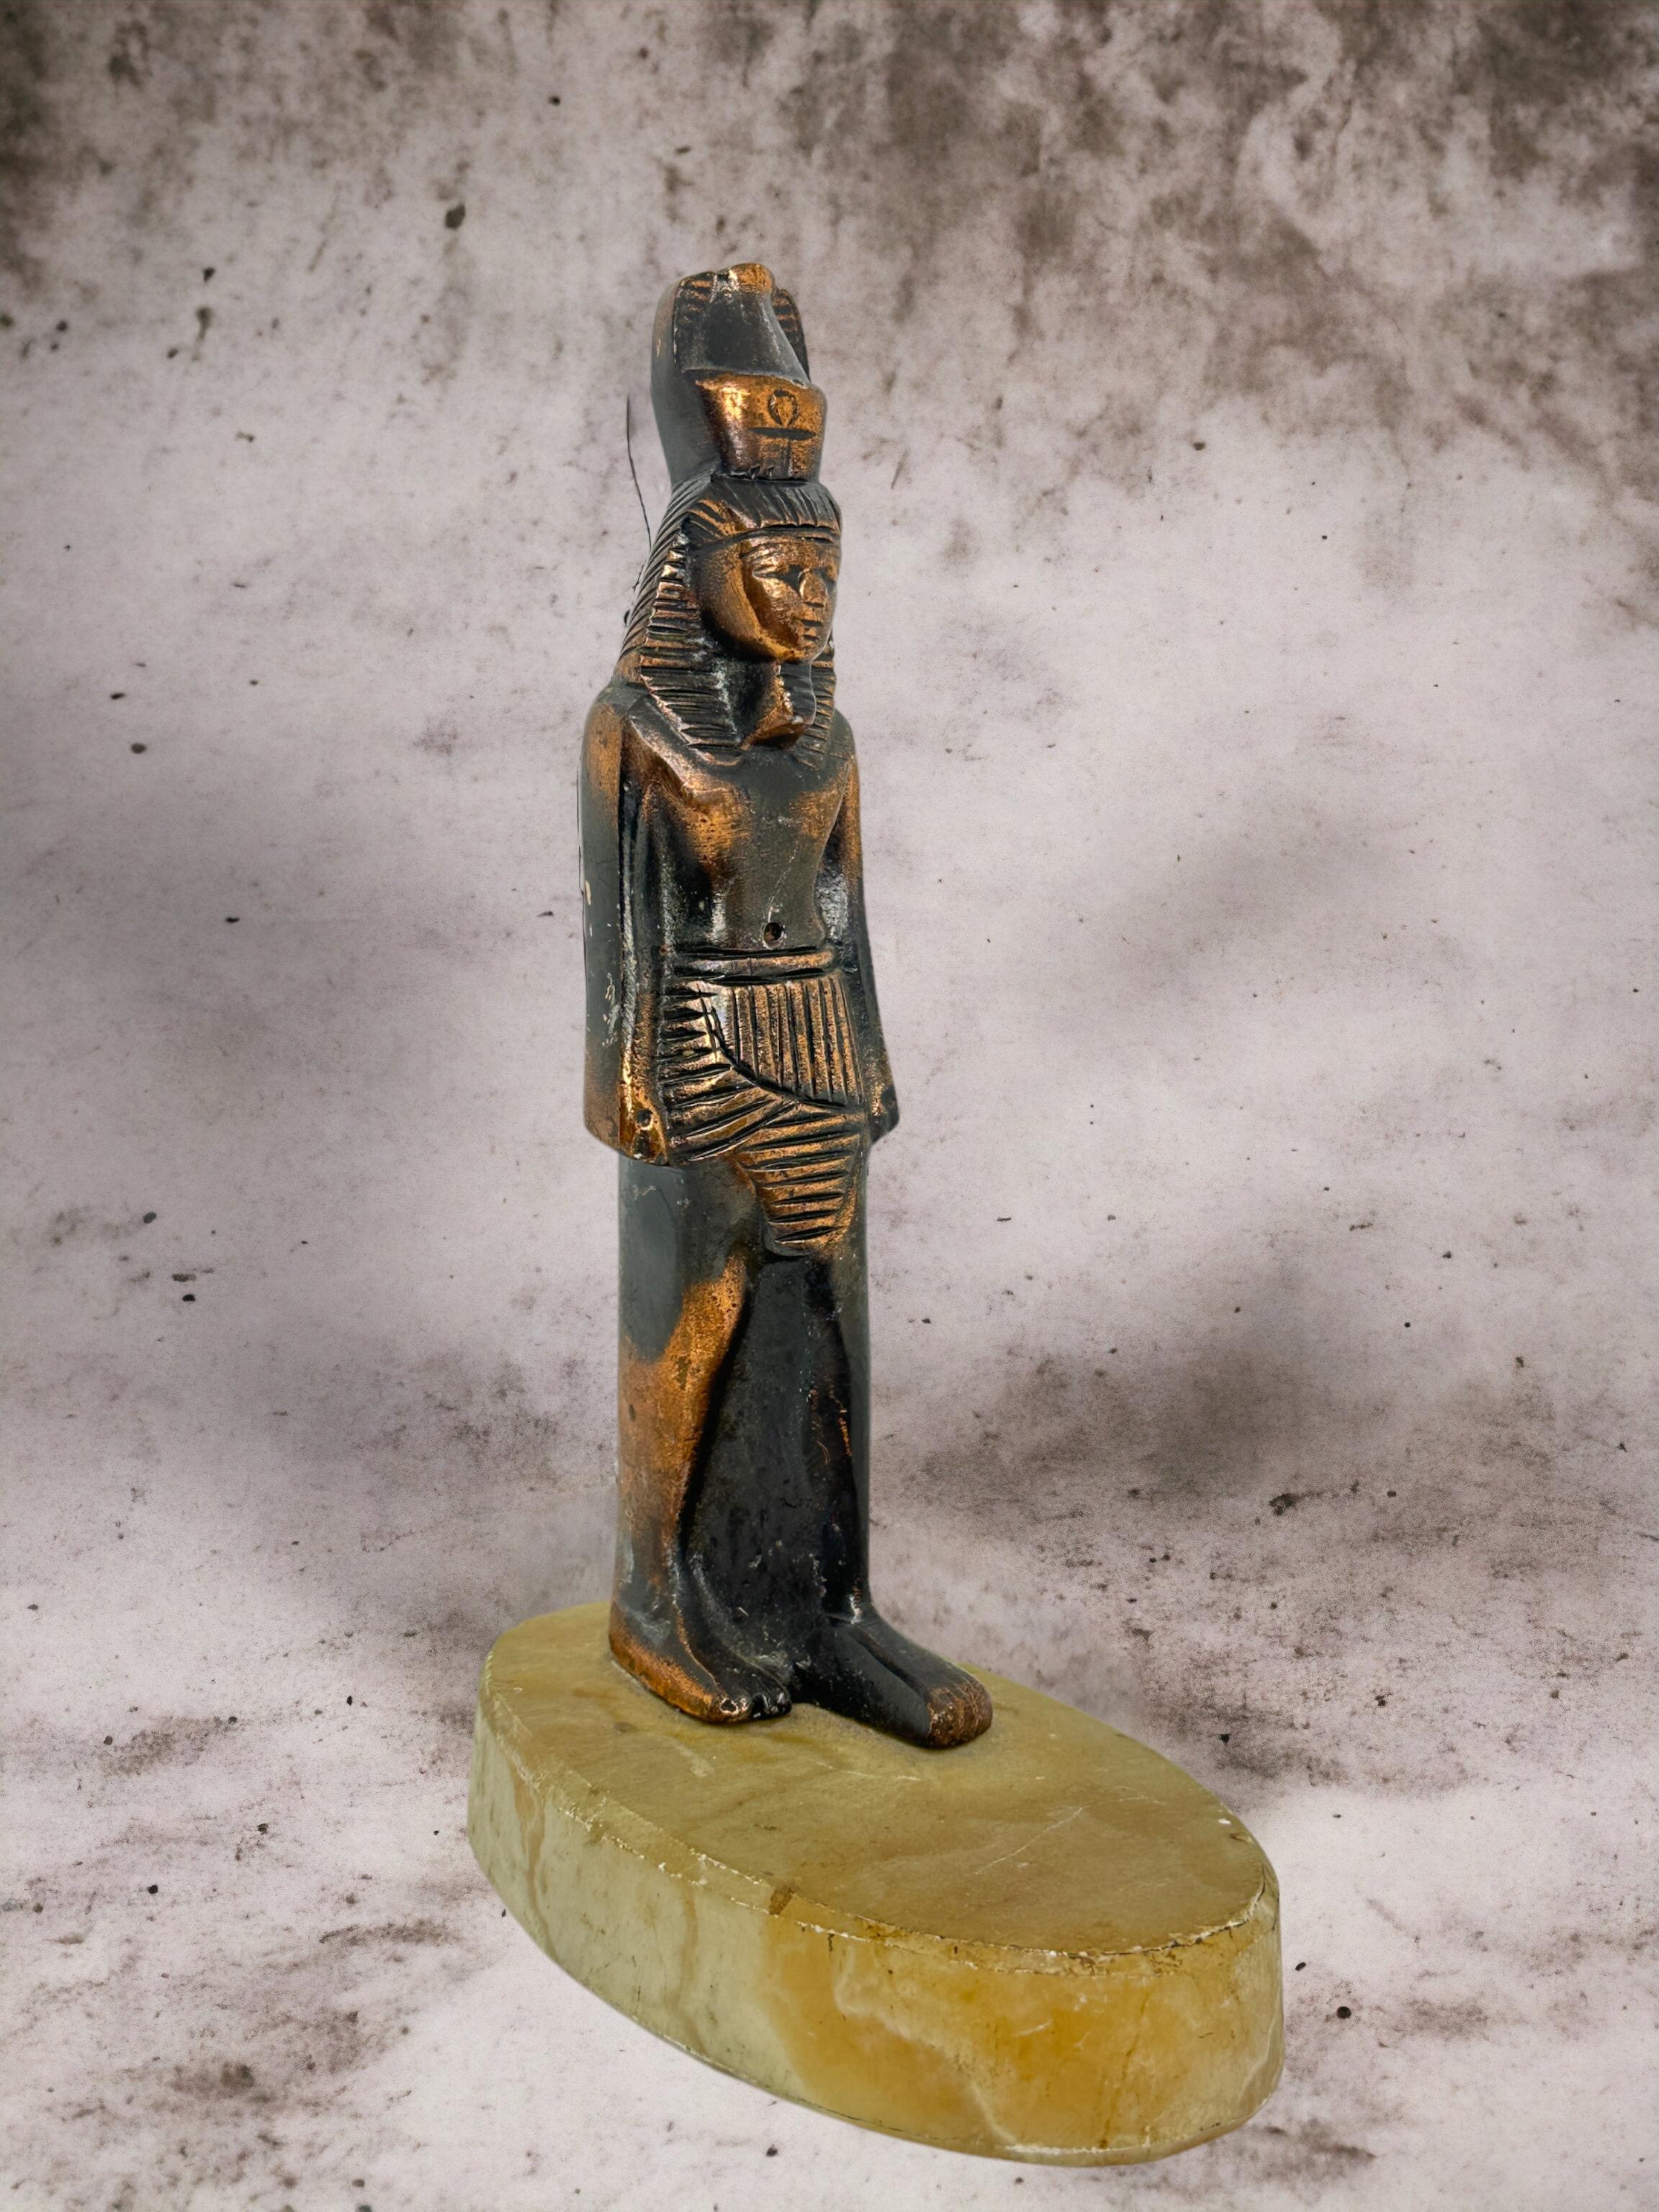 Eine schön gearbeitete Statue eines altägyptischen Pharaos, ich glaube, es ist Ramses der 2. aber ich bin mir nicht ganz sicher. Die Statue scheint aus Kupfer oder Weißmetall gefertigt zu sein. Sie ist auf einem Sockel aus Alabaster befestigt.
Ein